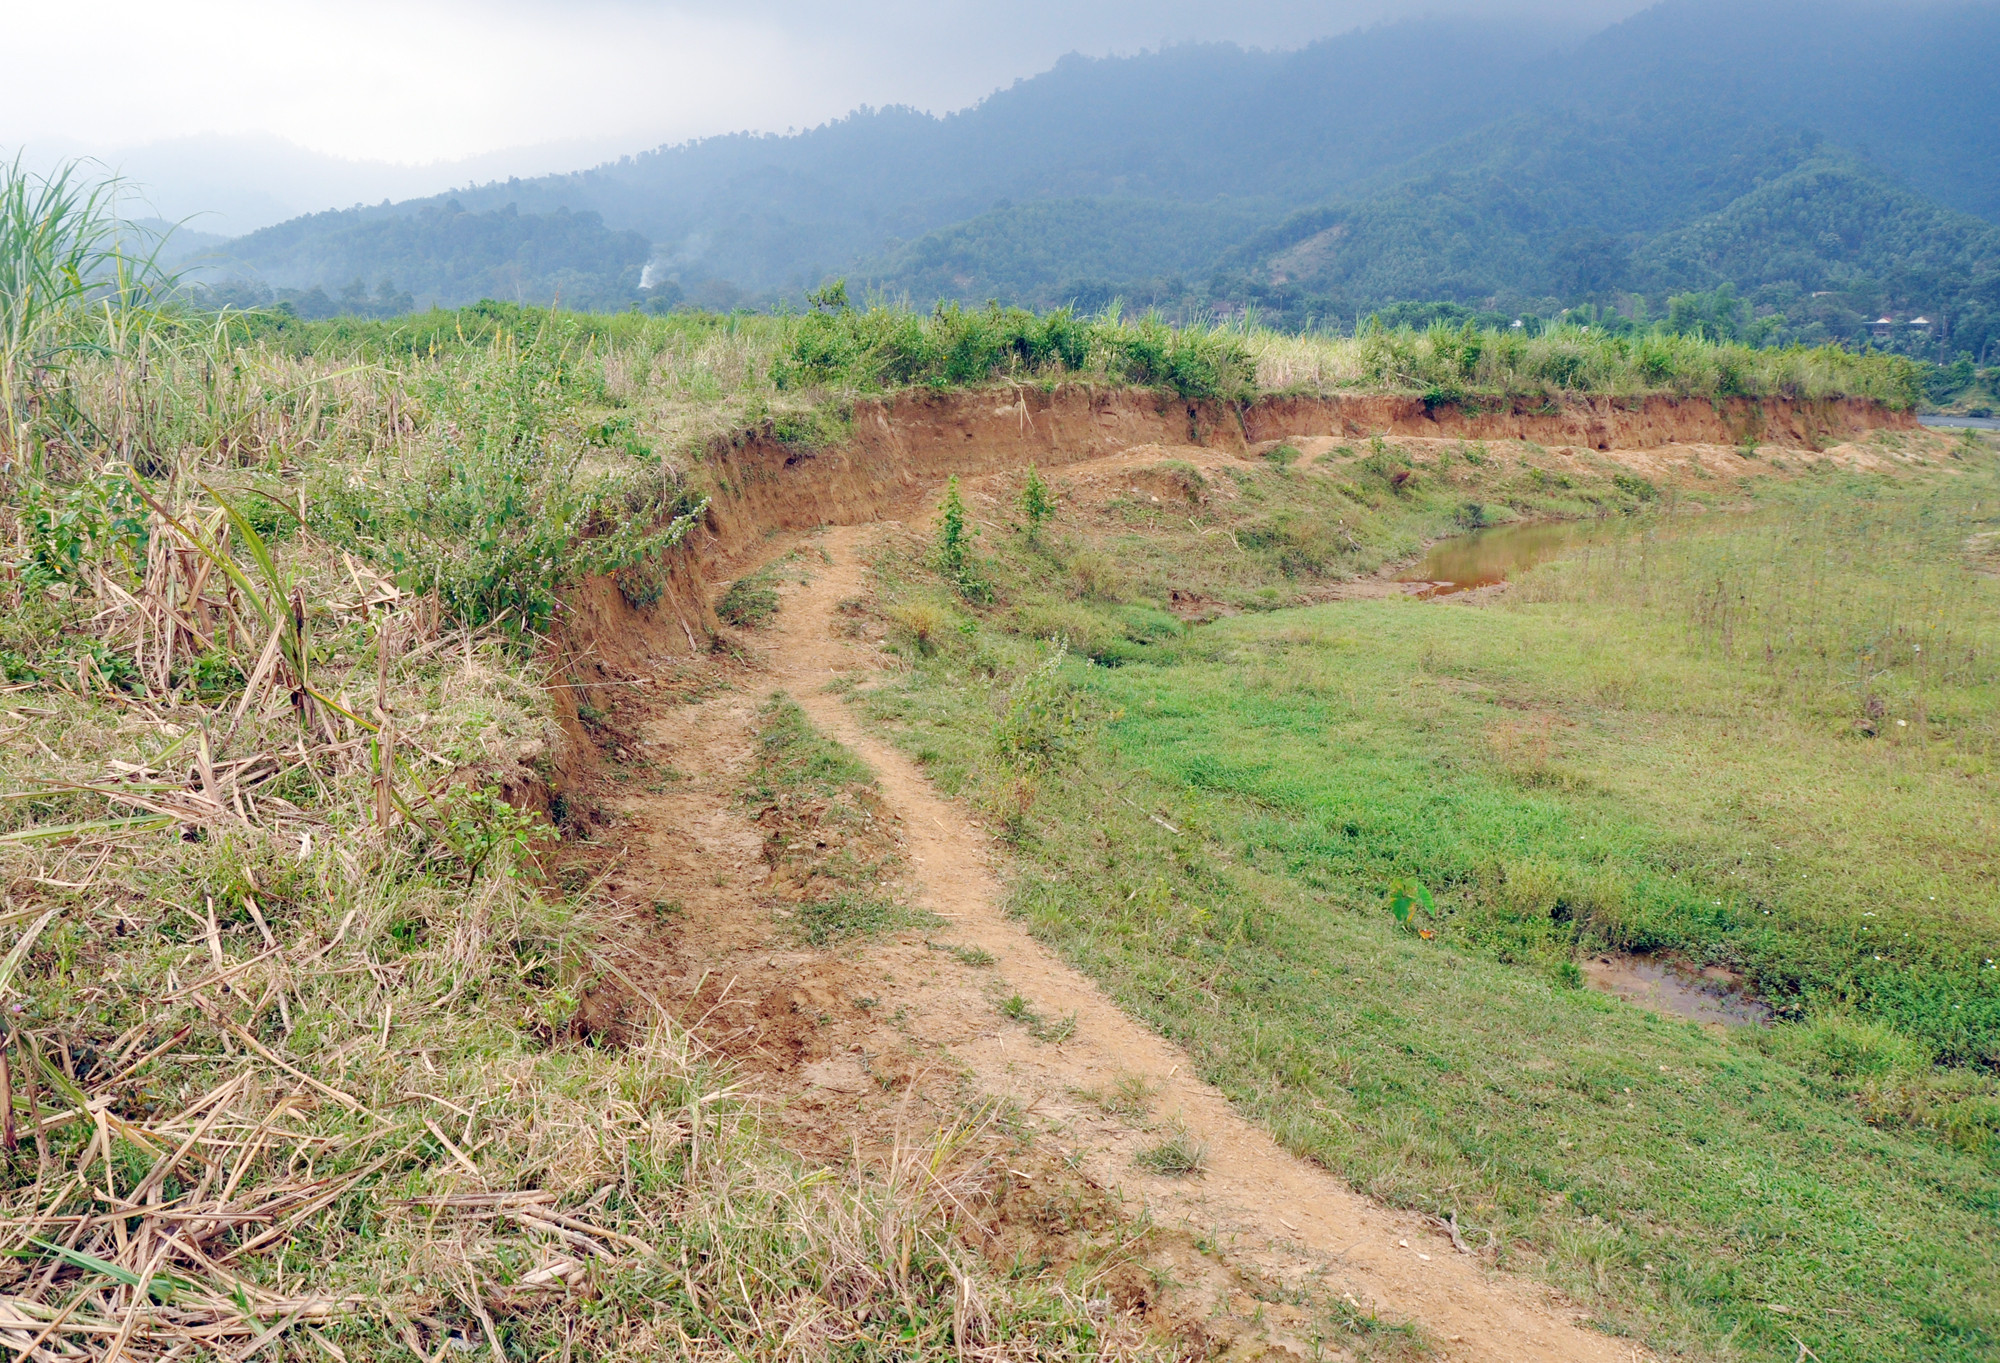 Hơn 10 ha đất sản xuất của bản Thái Hòa, xã Môn Sơn (Con Cuông) nằm bên tả ngạn sông Giăng được bà con nông dân trồng mía nguyên liệu. Tuy nhiên, những năm gần đây, dòng chảy sông Giăng biến đổi gây tình trạng sạt lở nghiêm trọng, nhất là mùa mưa lũ. Tính từ năm 2015 đến nay, khoảng 2 ha đất đã bị dòng nước 